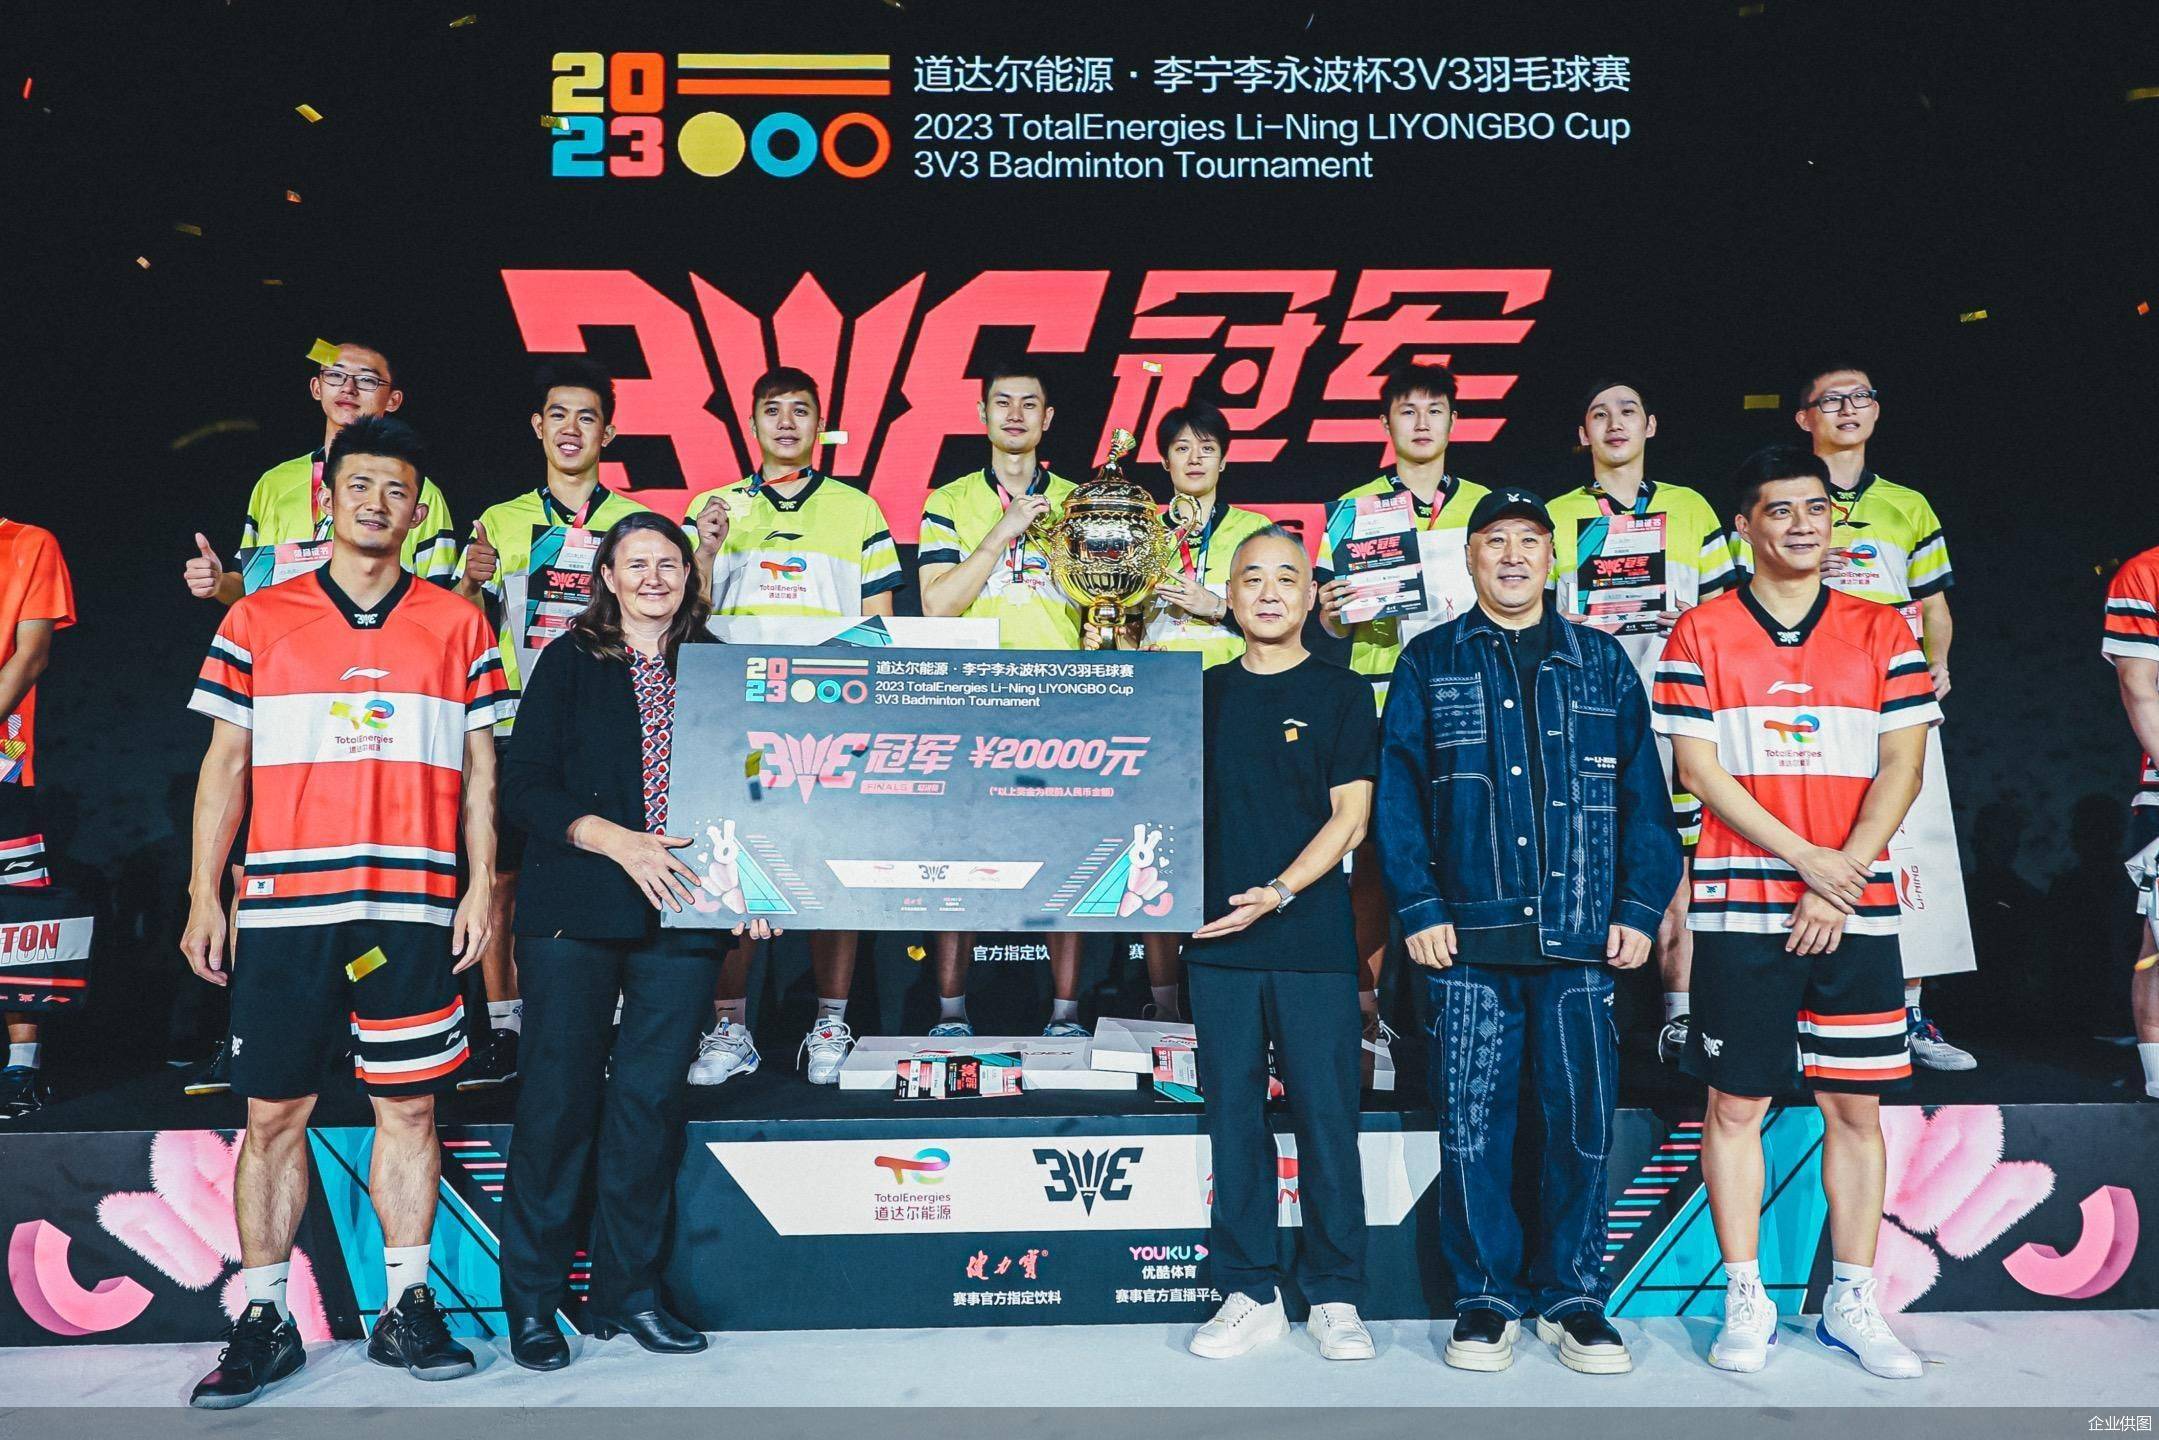 2023道达尔能源·李宁李永波杯3V3羽毛球赛总决赛在京举办